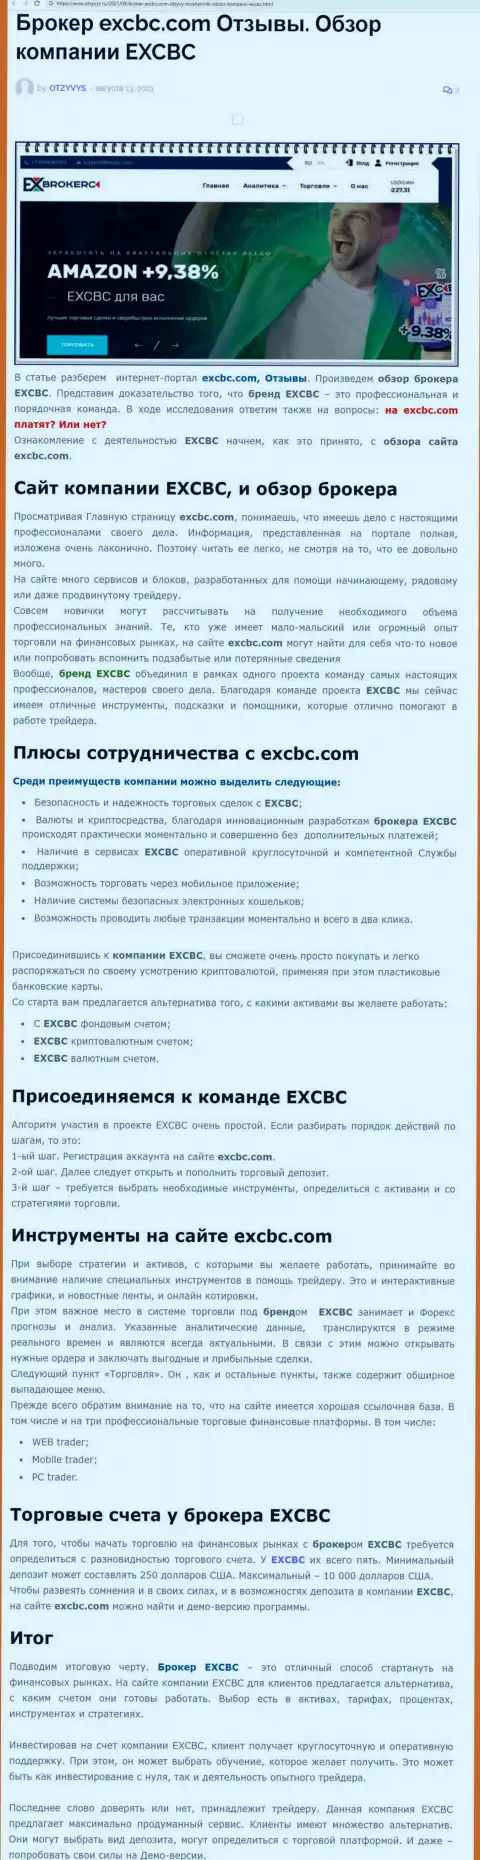 Материал об форекс брокерской компании ЕХ Брокерс на портале Otzyvys Ru